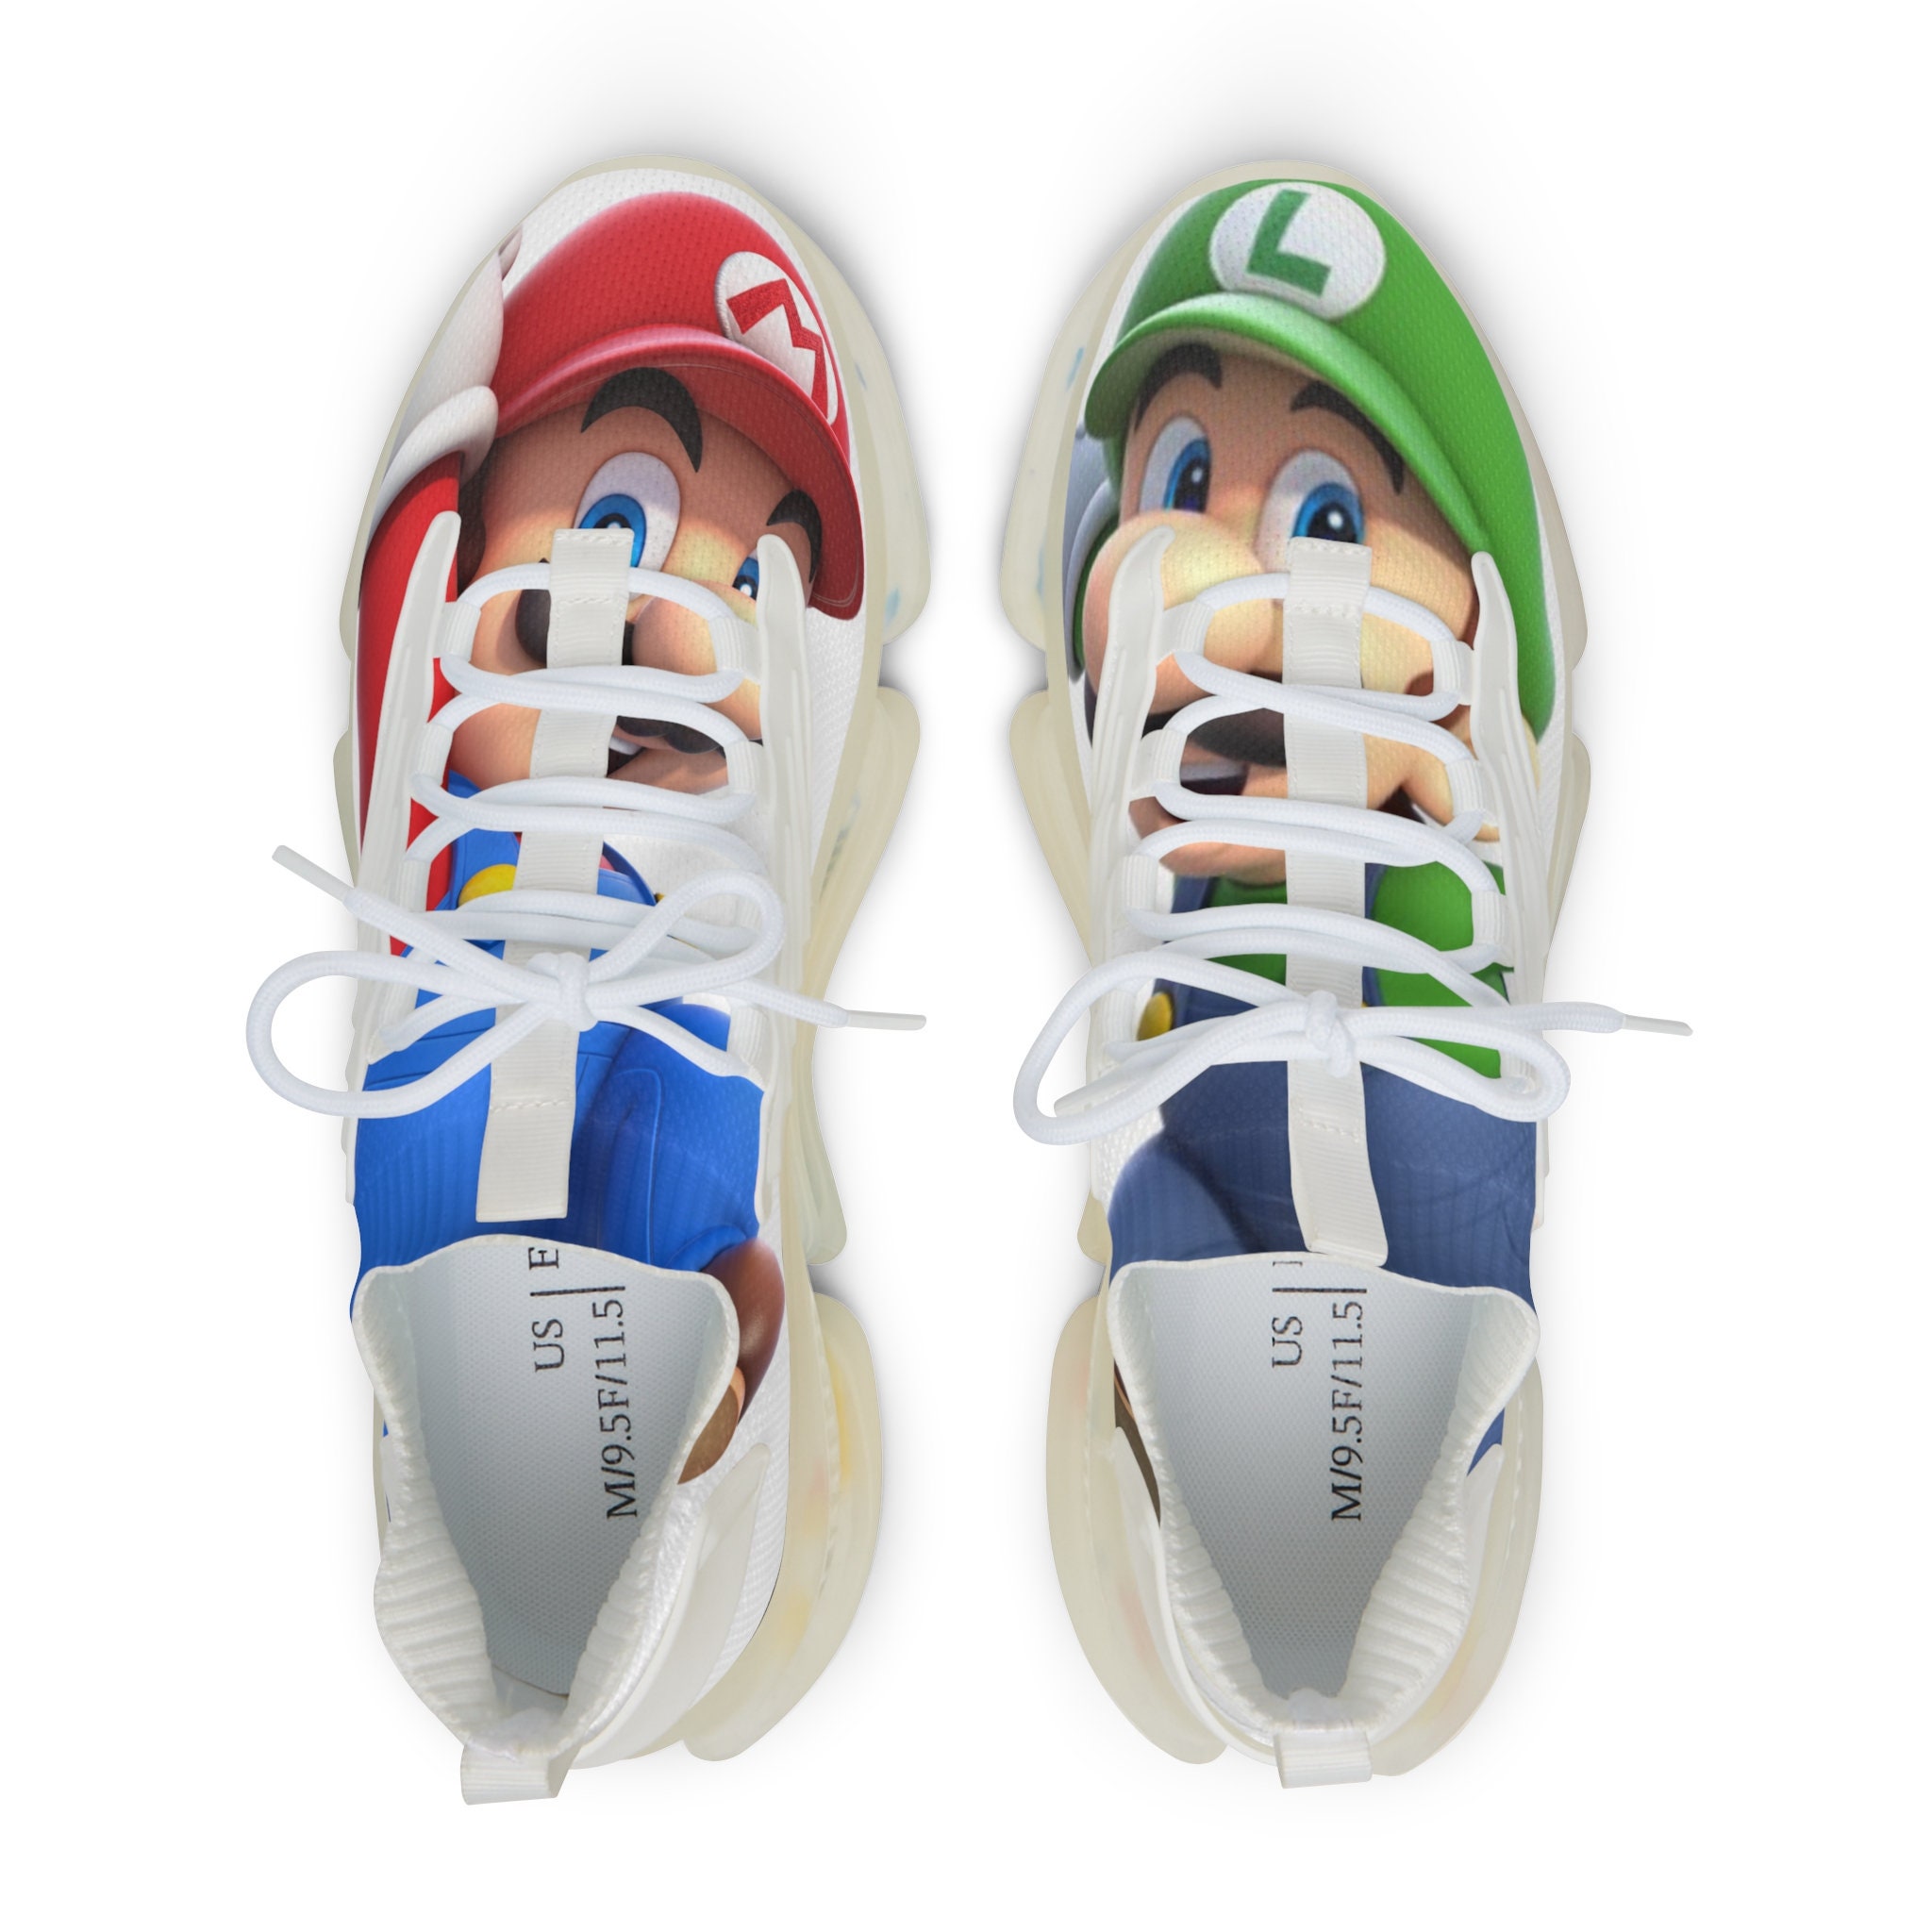 Luigi Shoes - Etsy